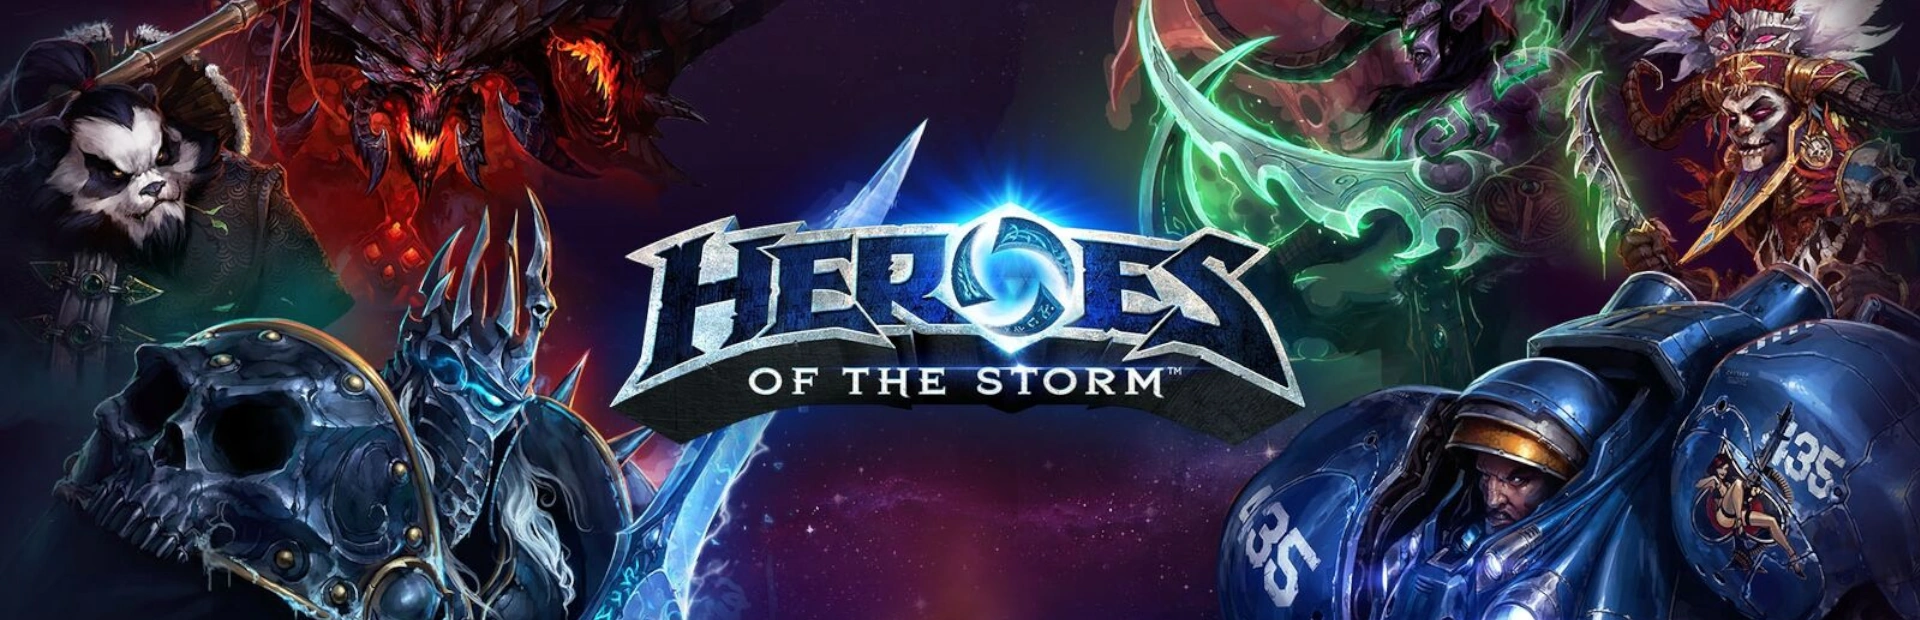 دانلود بازی Heroes of the Storm برای کامپیوتر | گیمباتو